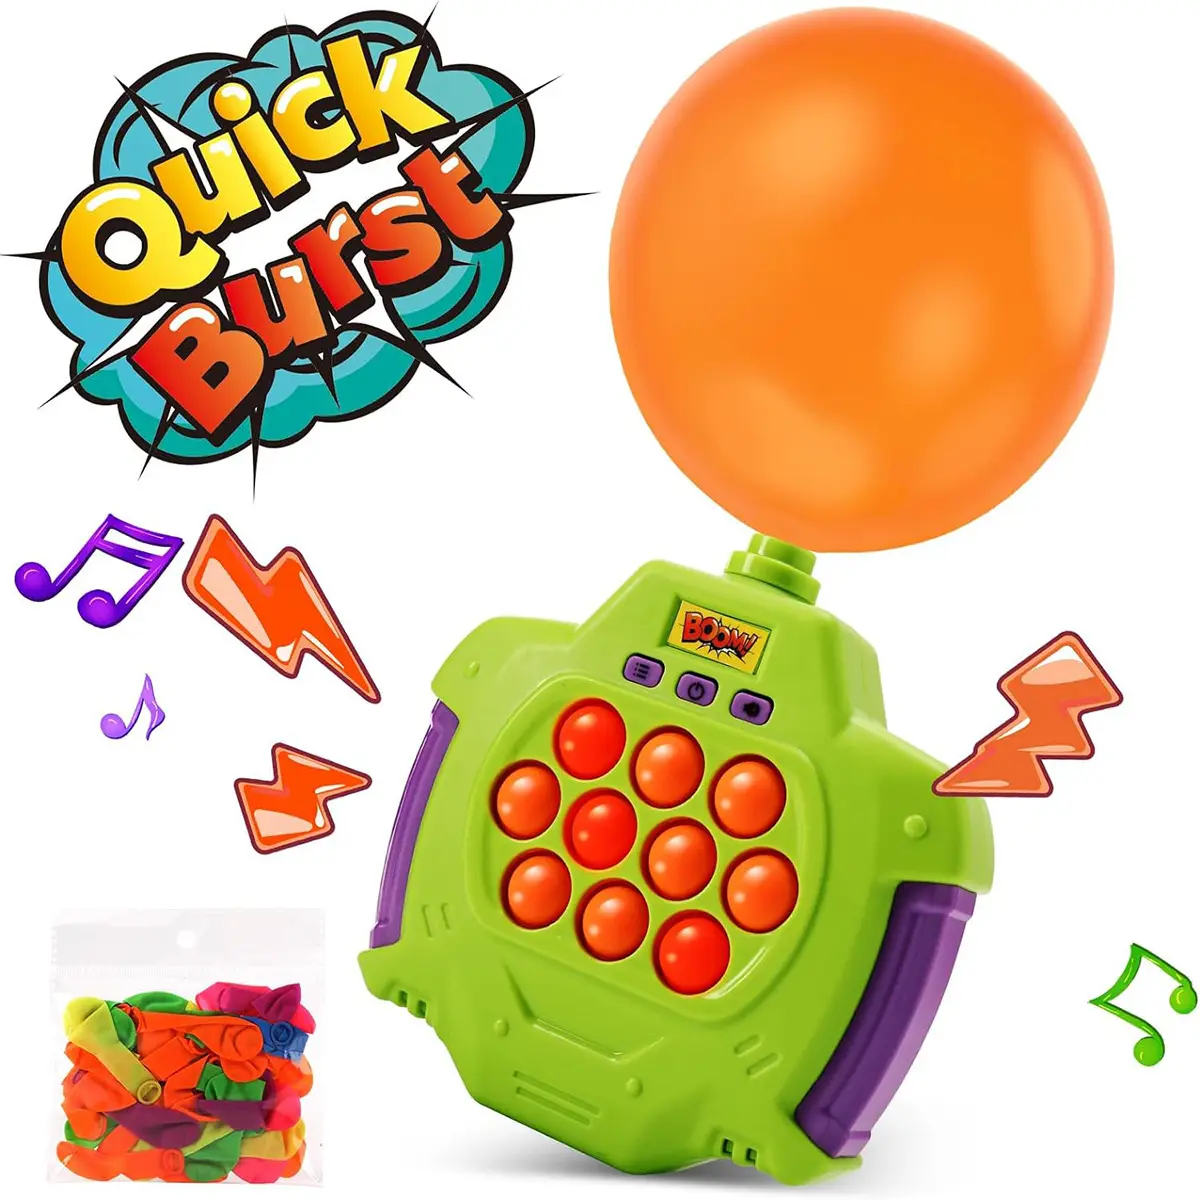 Zhorya quick pop с подсветкой игровой консоли быстро пуш-ап игрушечный кубик для быстрого пуш-ап пузырь popit пазл электронная игра